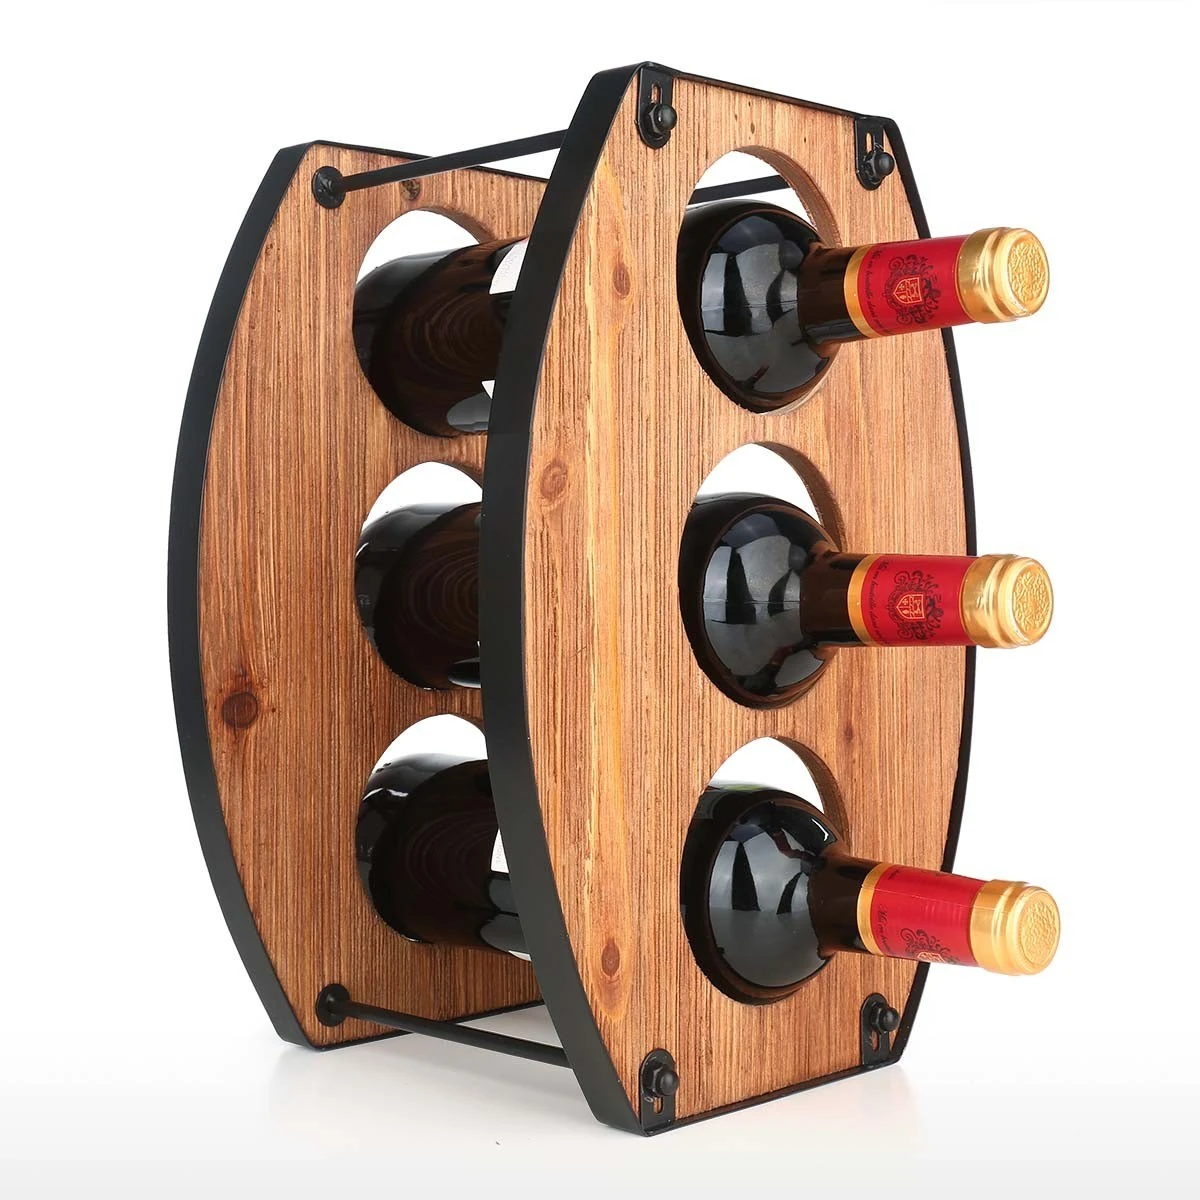 Viinipulloteline säilyttää 3 pulloa viiniä samassa kuin yksi pullo image